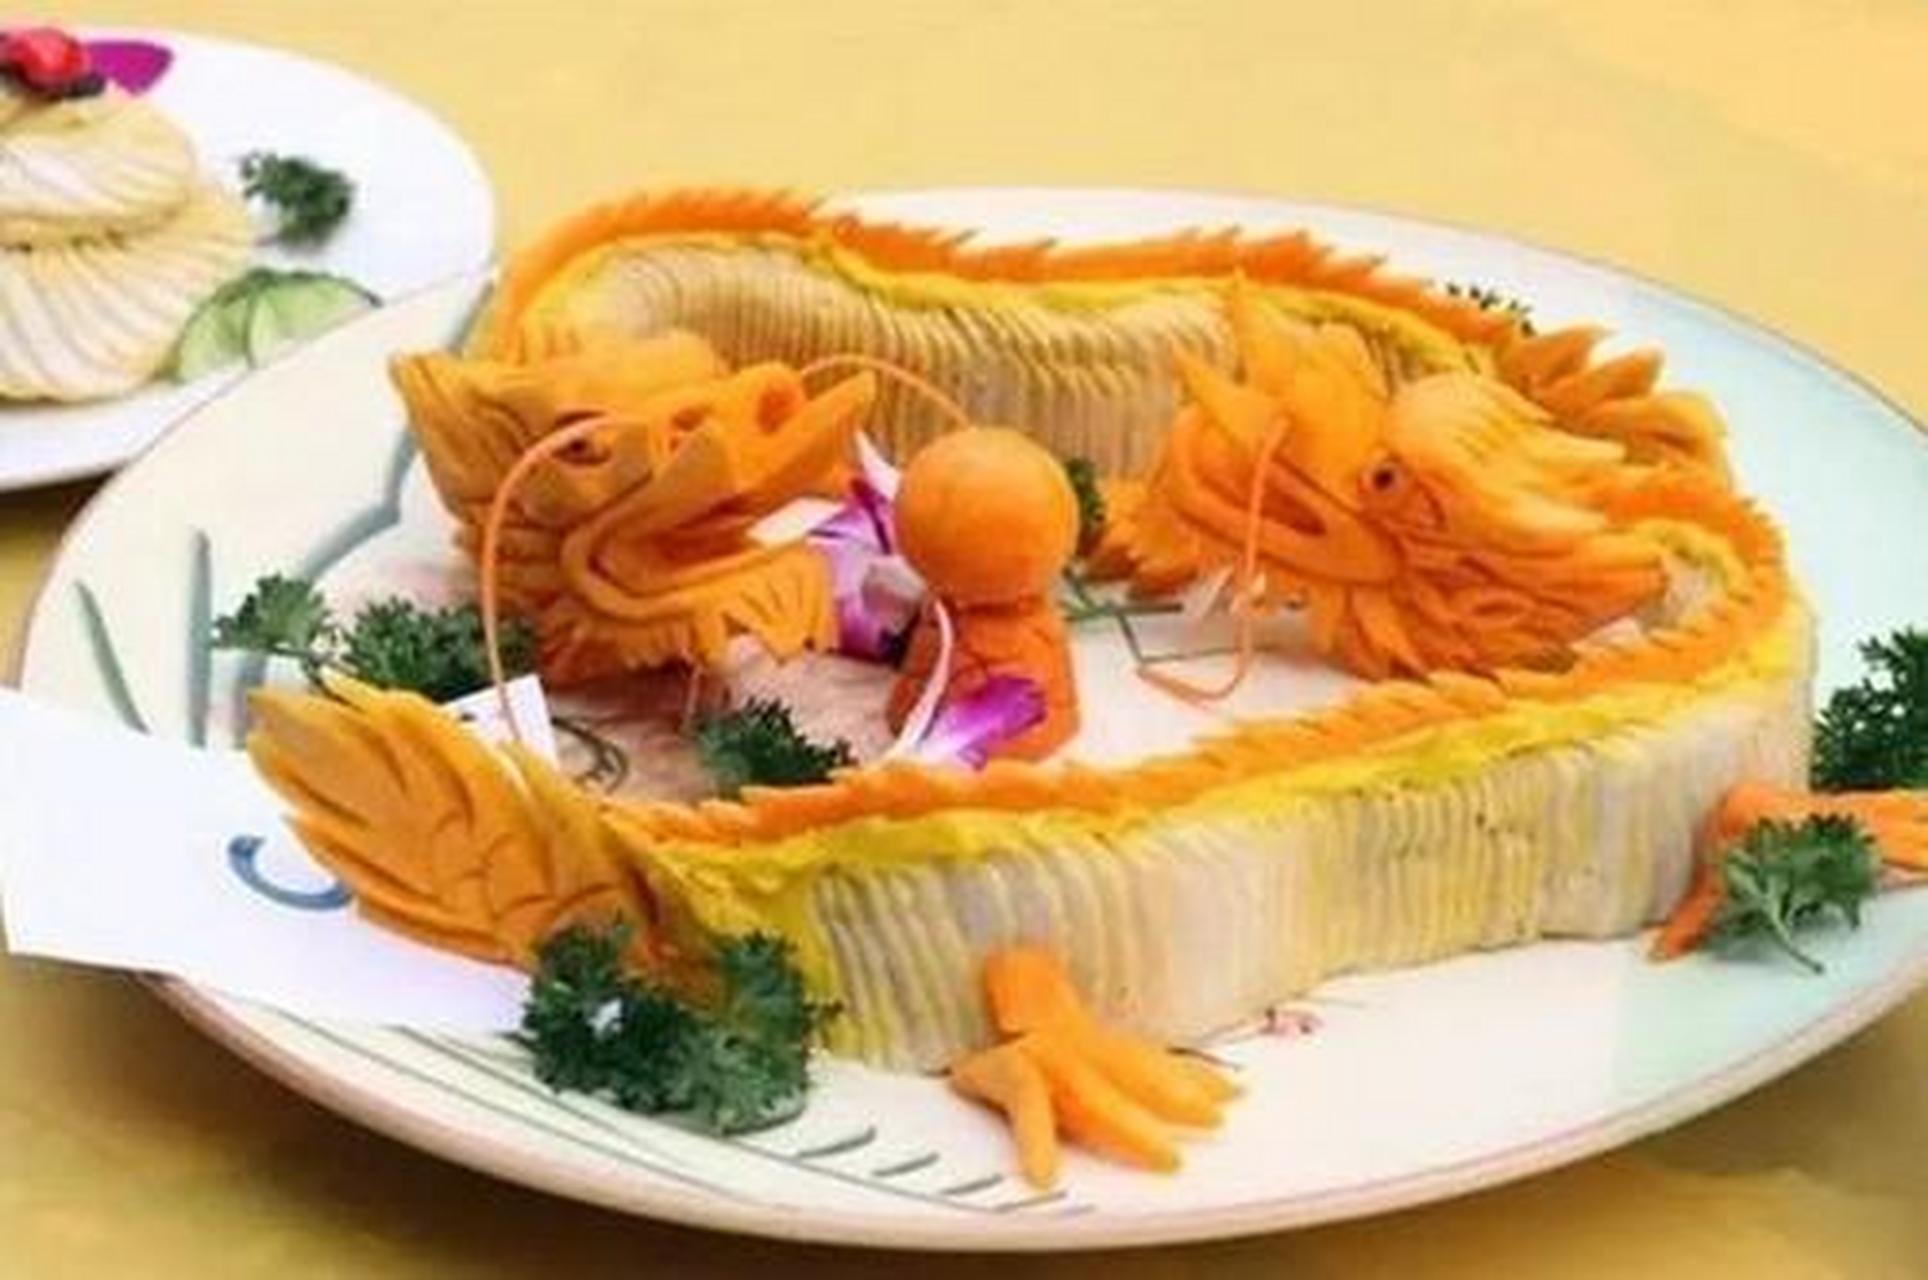 钟祥蟠龙菜,是钟祥市特有的名菜佳肴,俗称剁菜,卷切,是我国明朝时的